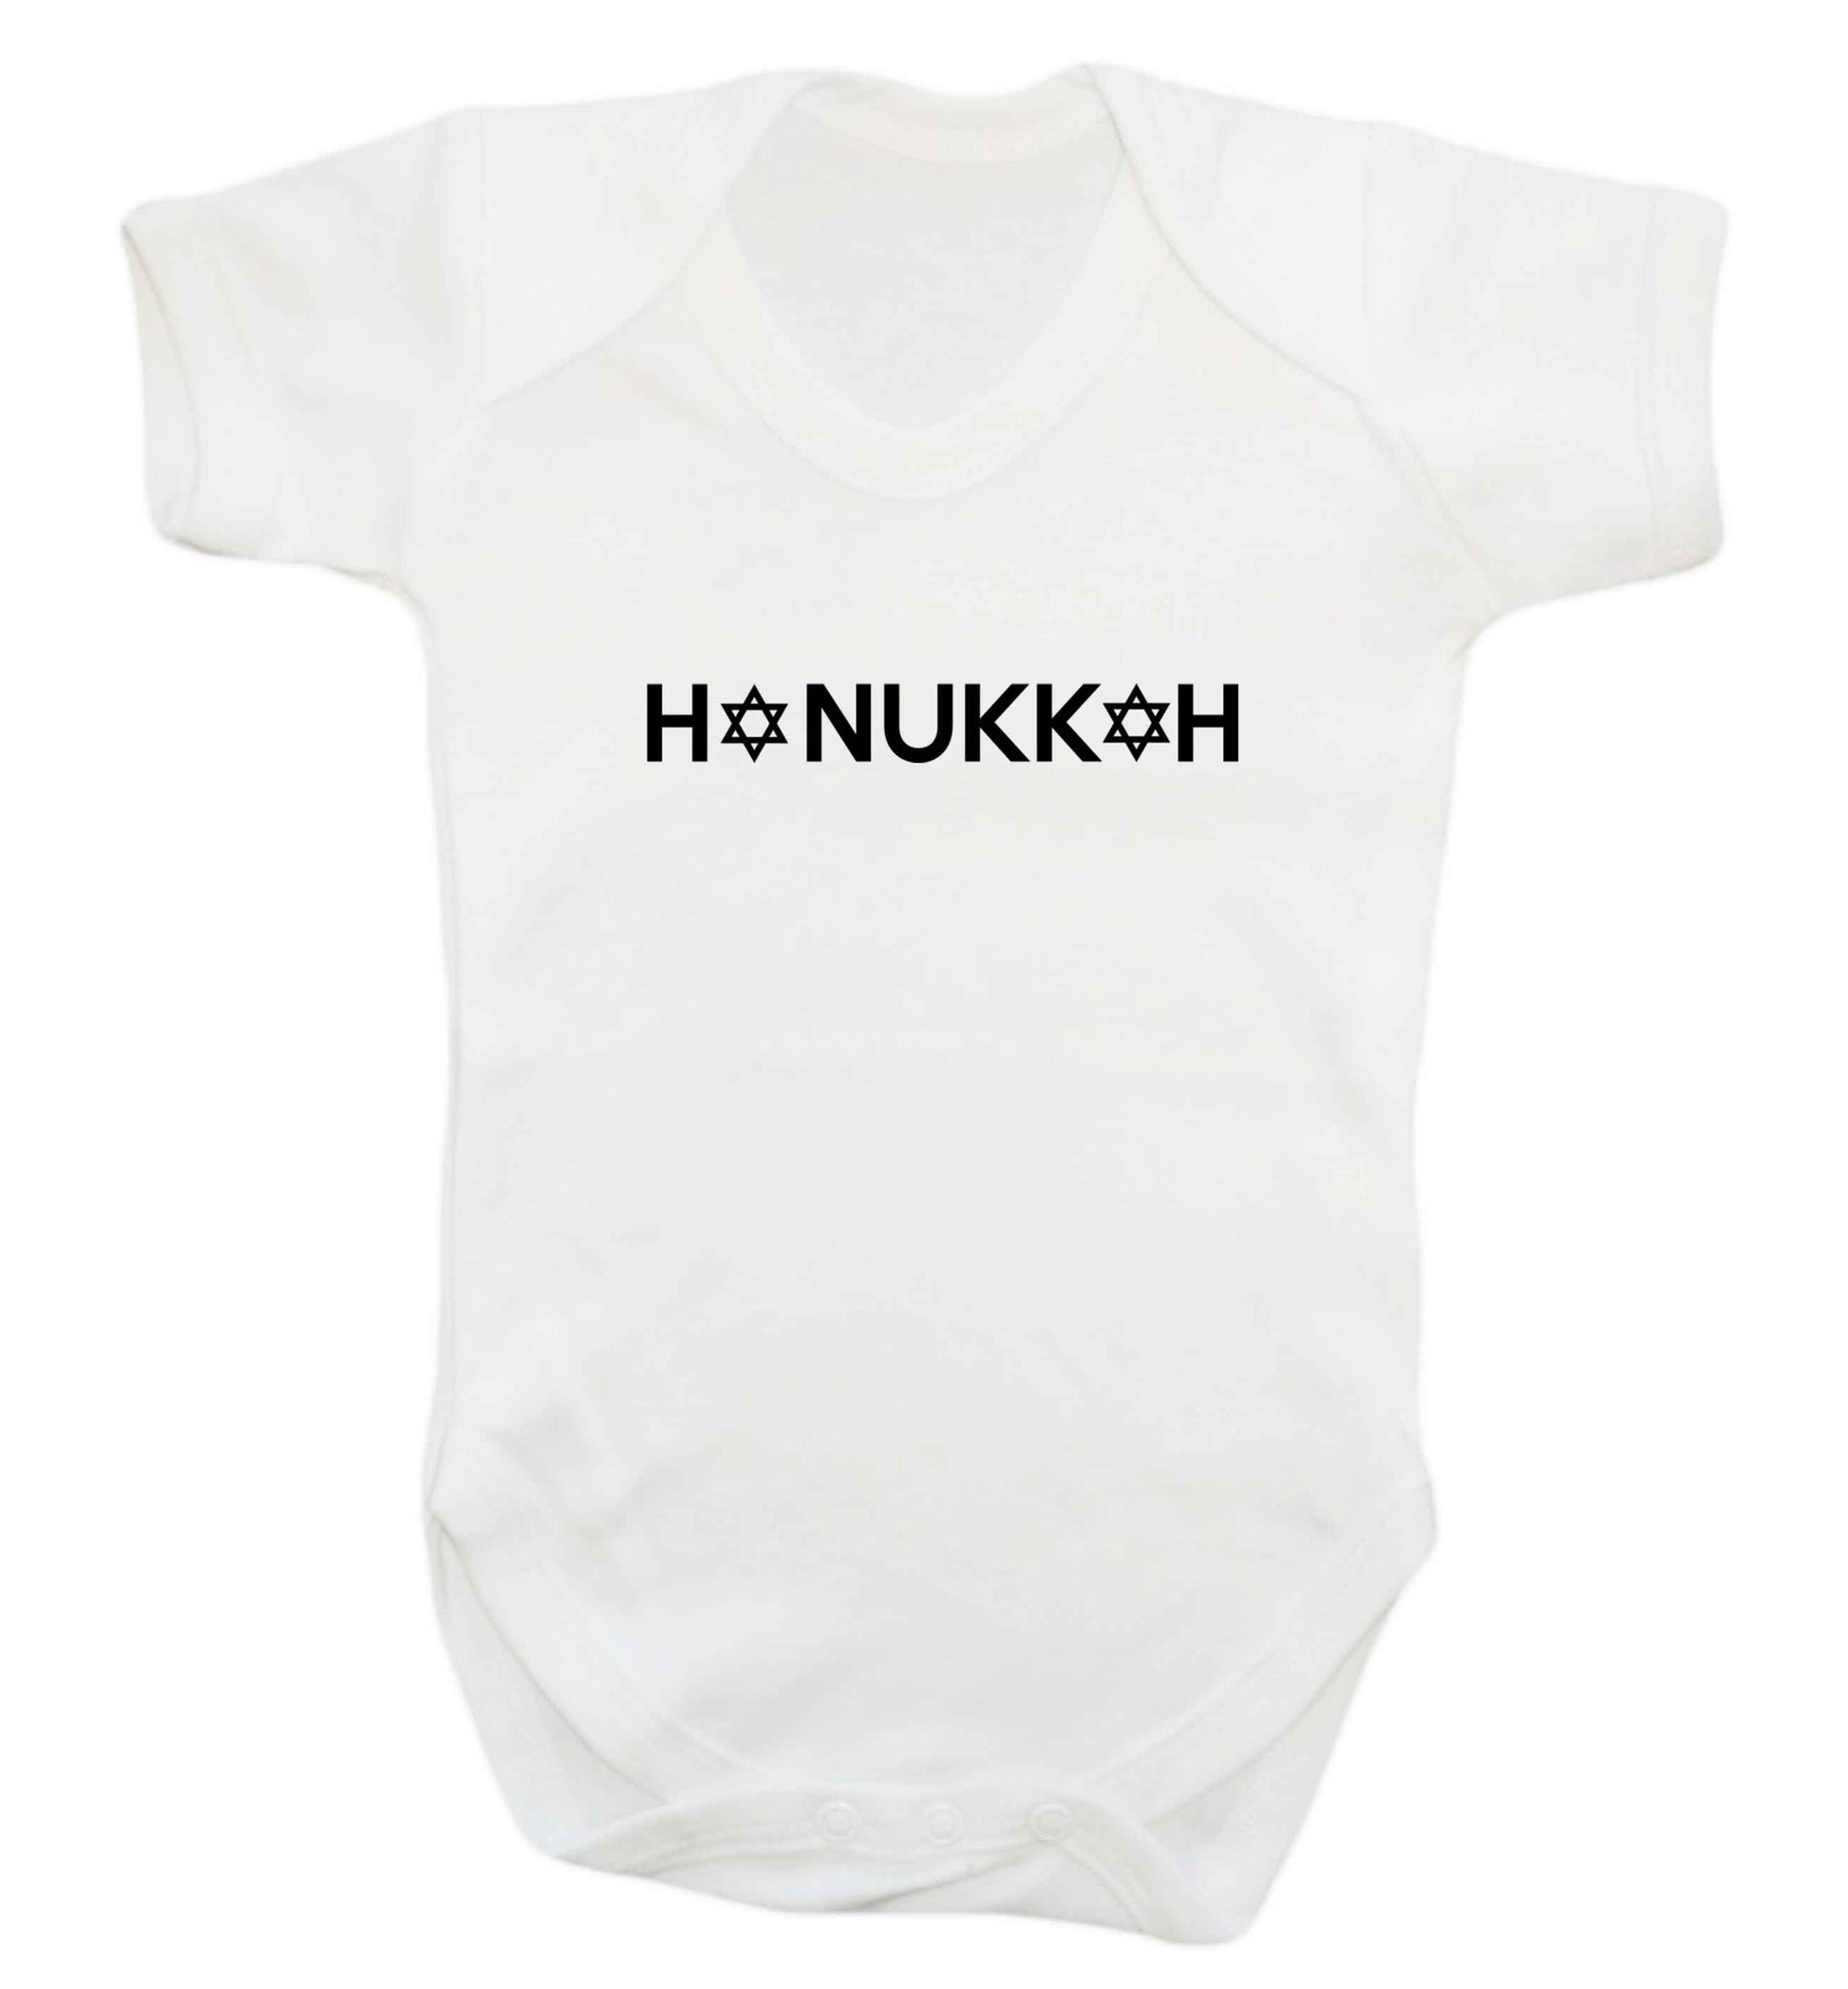 Hanukkah star of david baby vest white 18-24 months